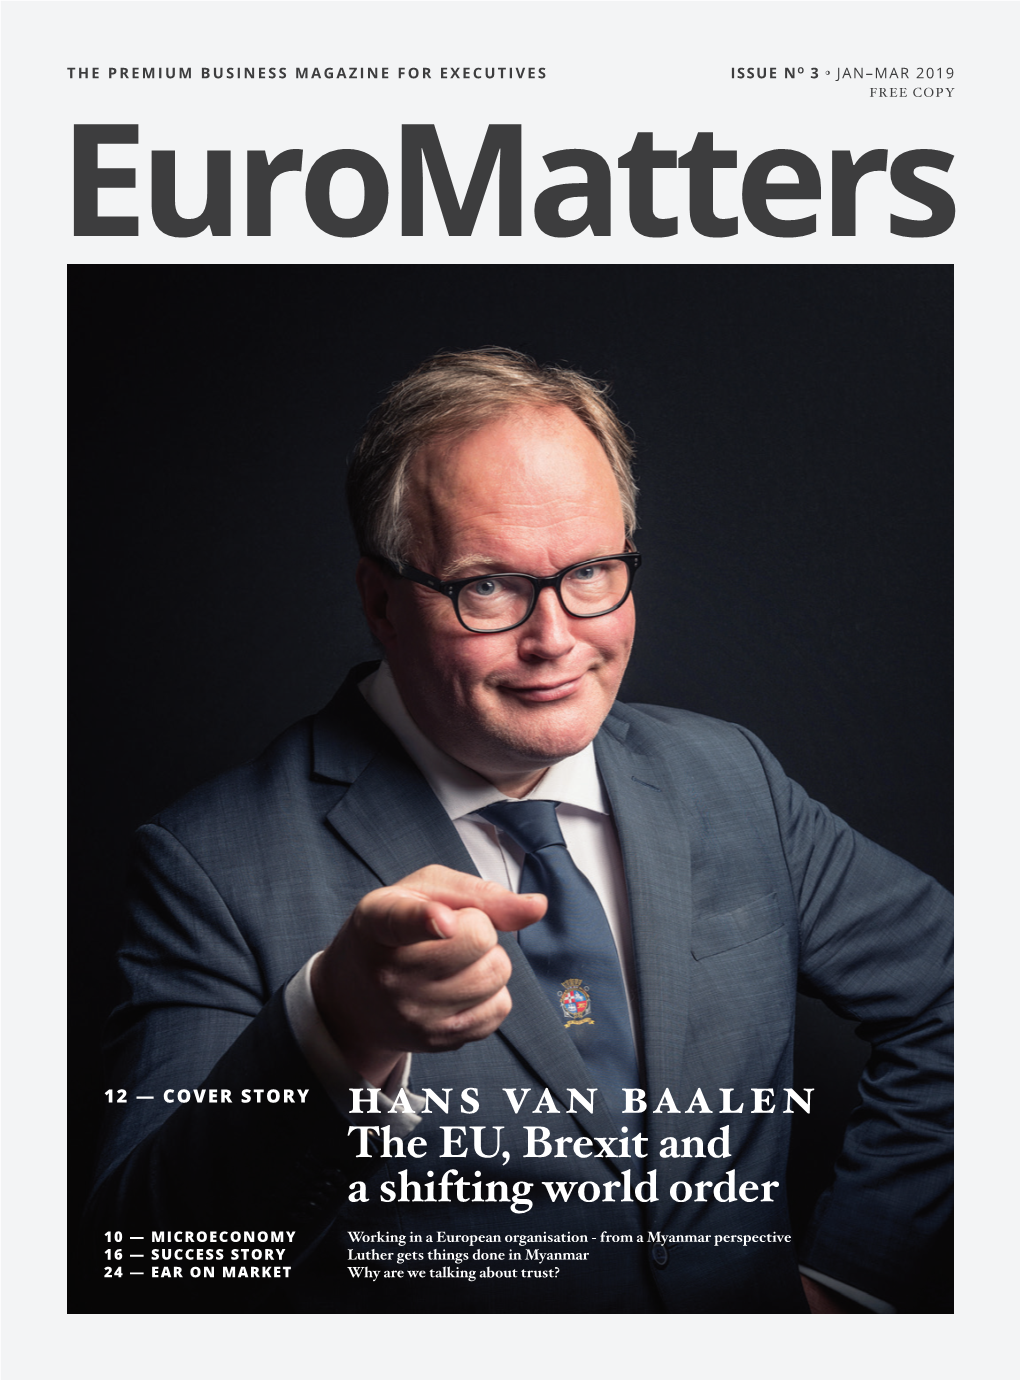 Hans Van Baalen the EU, Brexit and a Shifting World Order